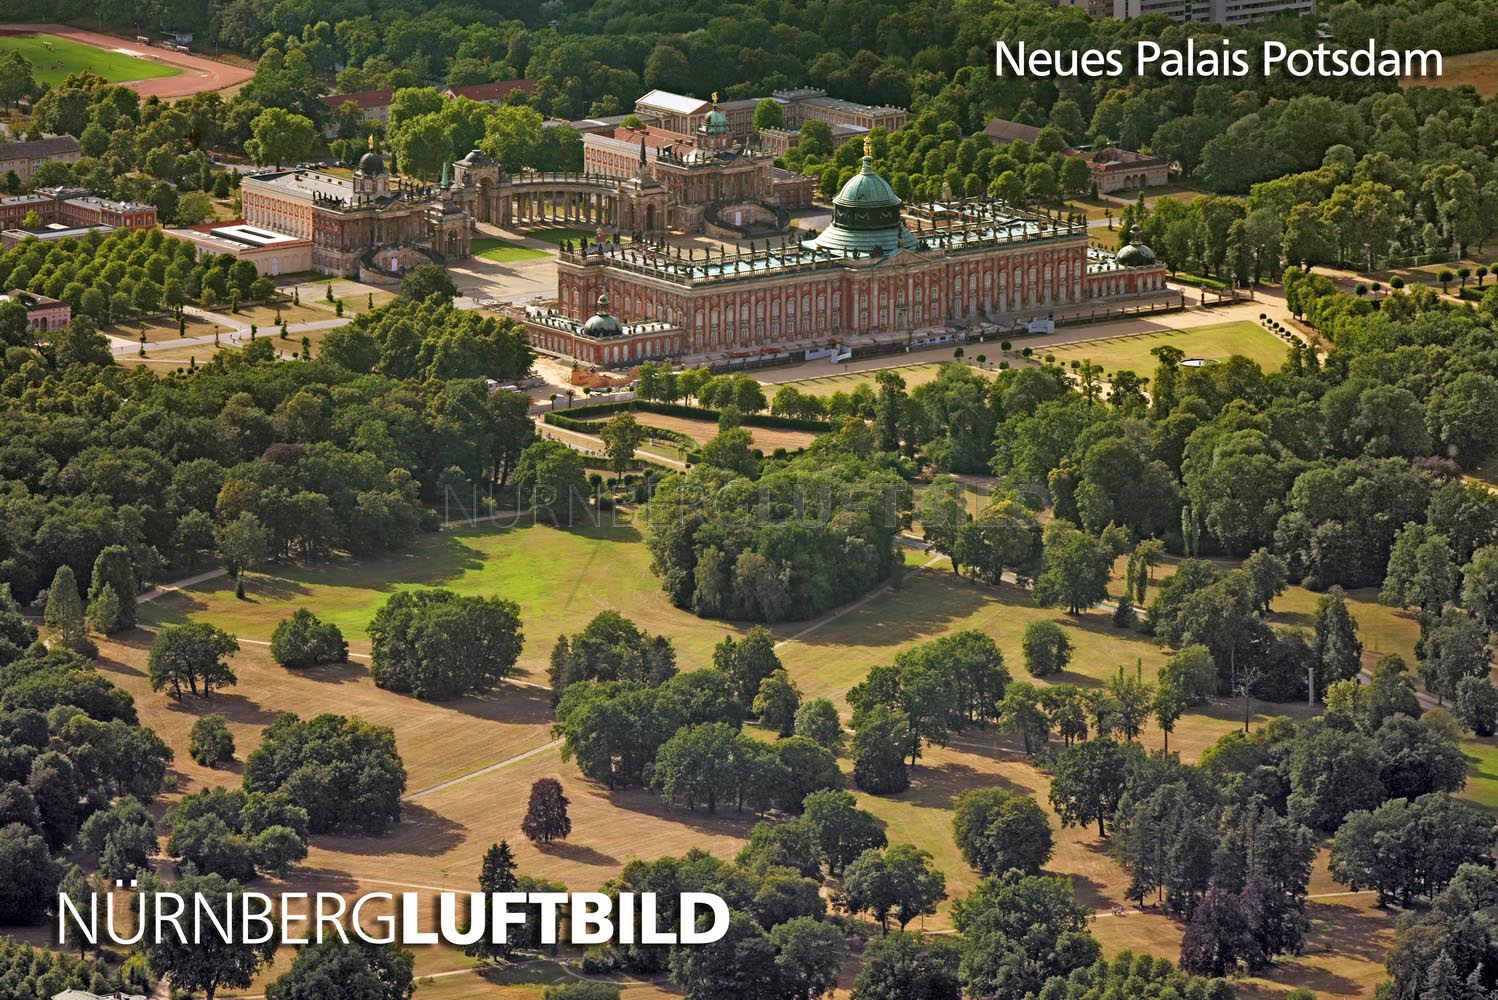 Neues Palais von Nordwesten, Potsdam, Luftbild